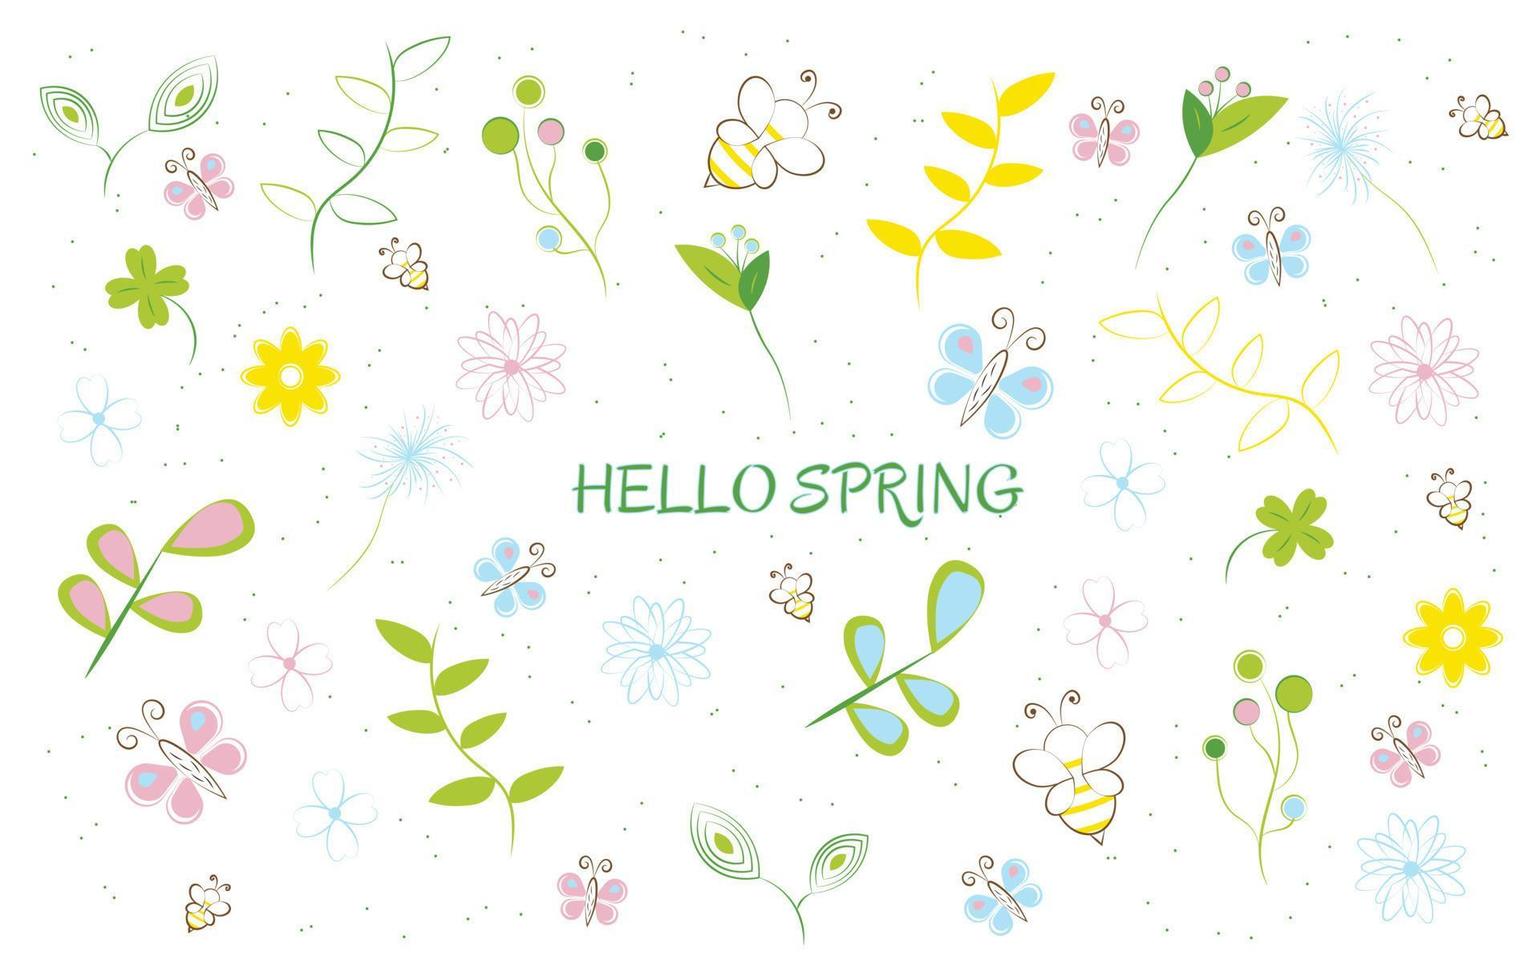 hola feliz primavera vector